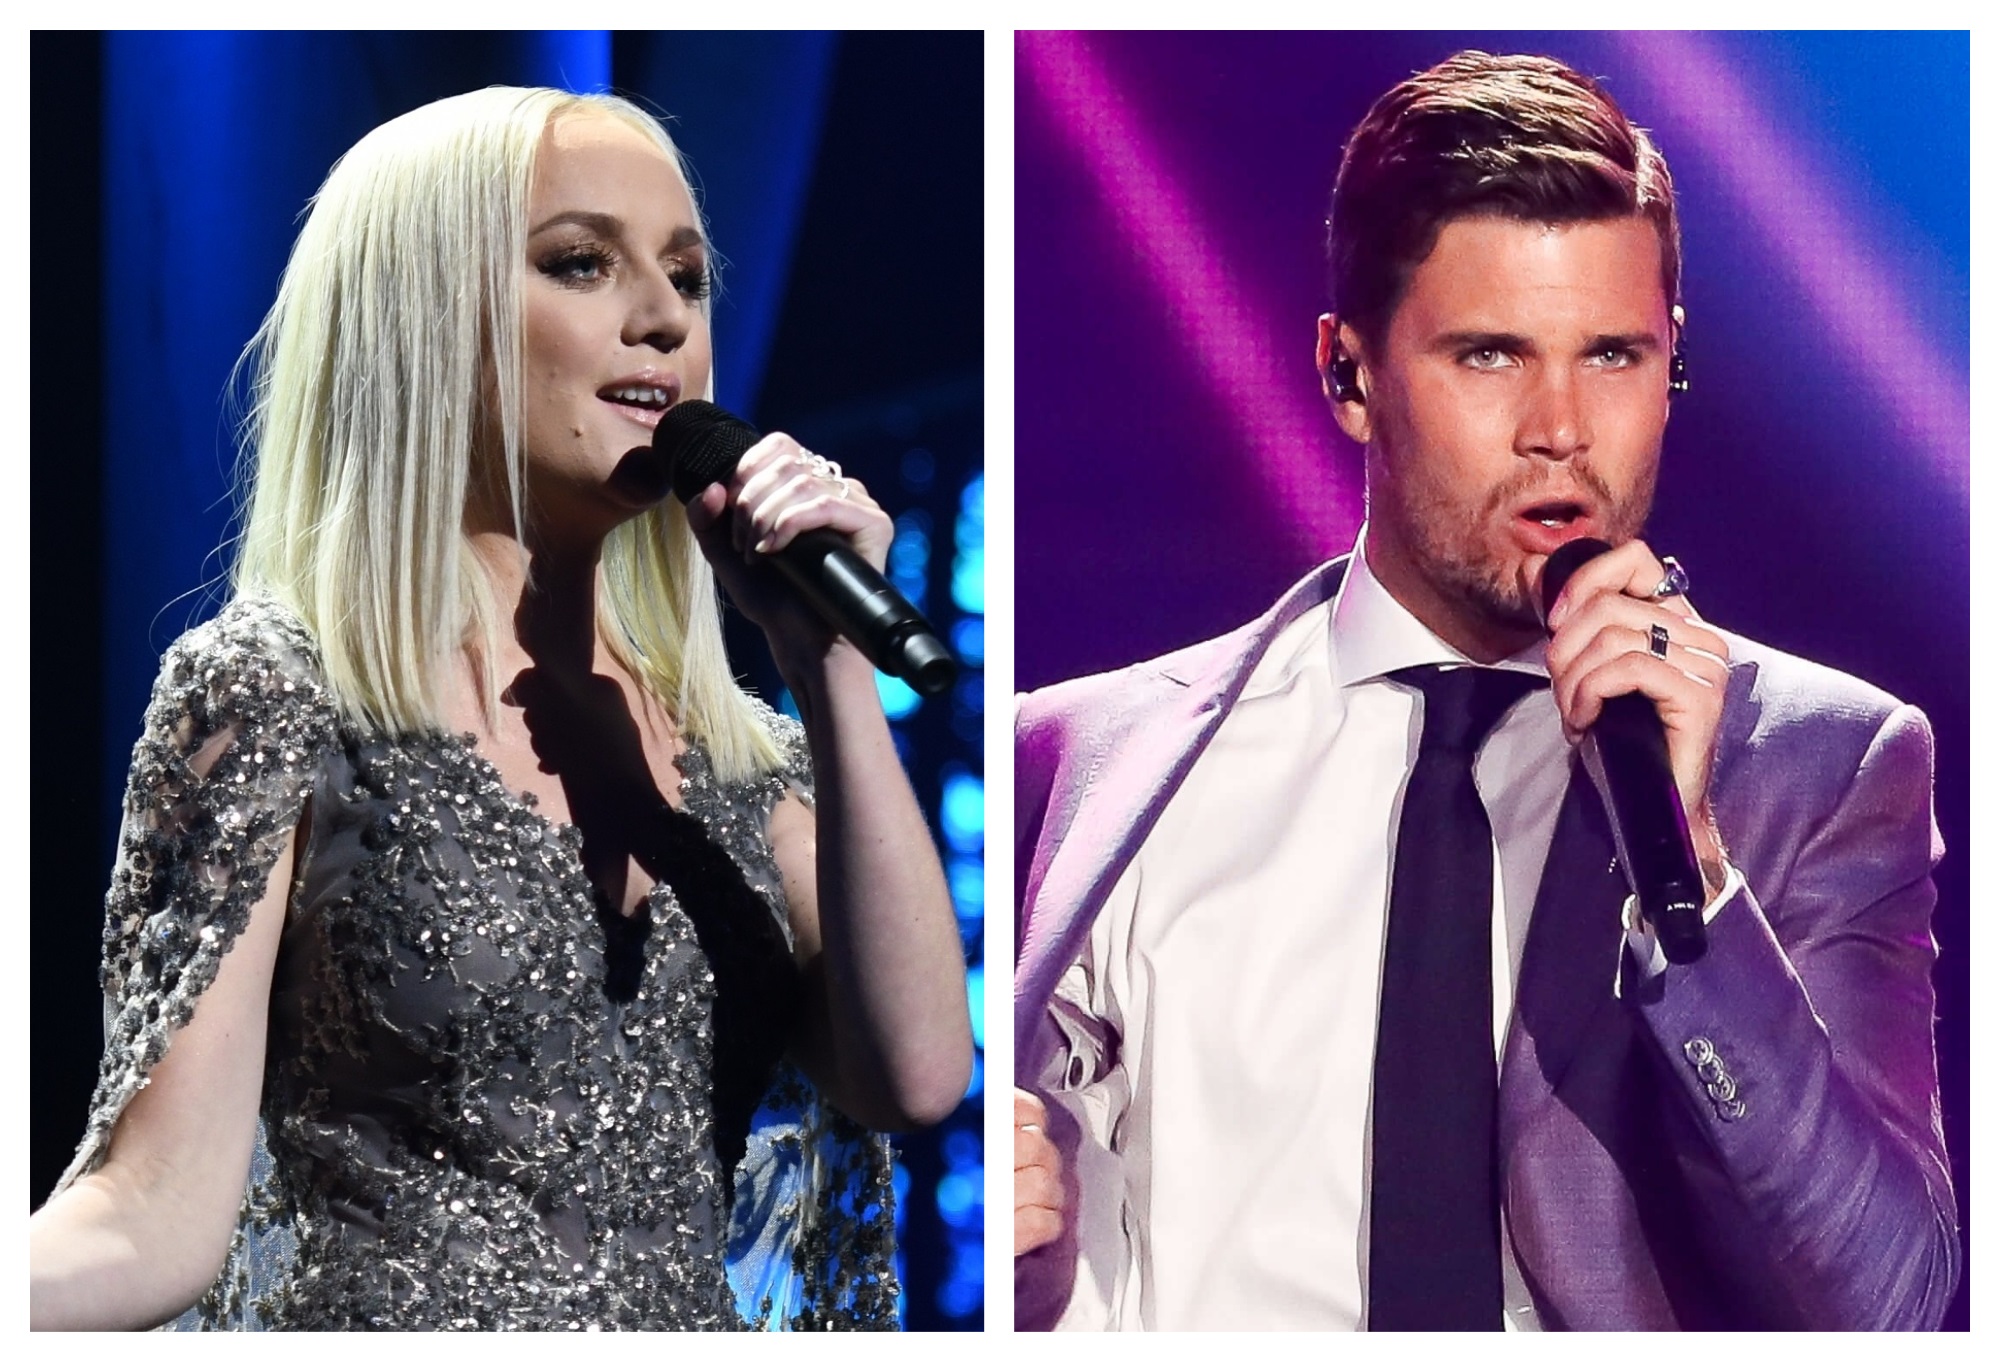 Anna Bergendahl e Robin Bengtsson especulados para o Melodifestivalen em 2020